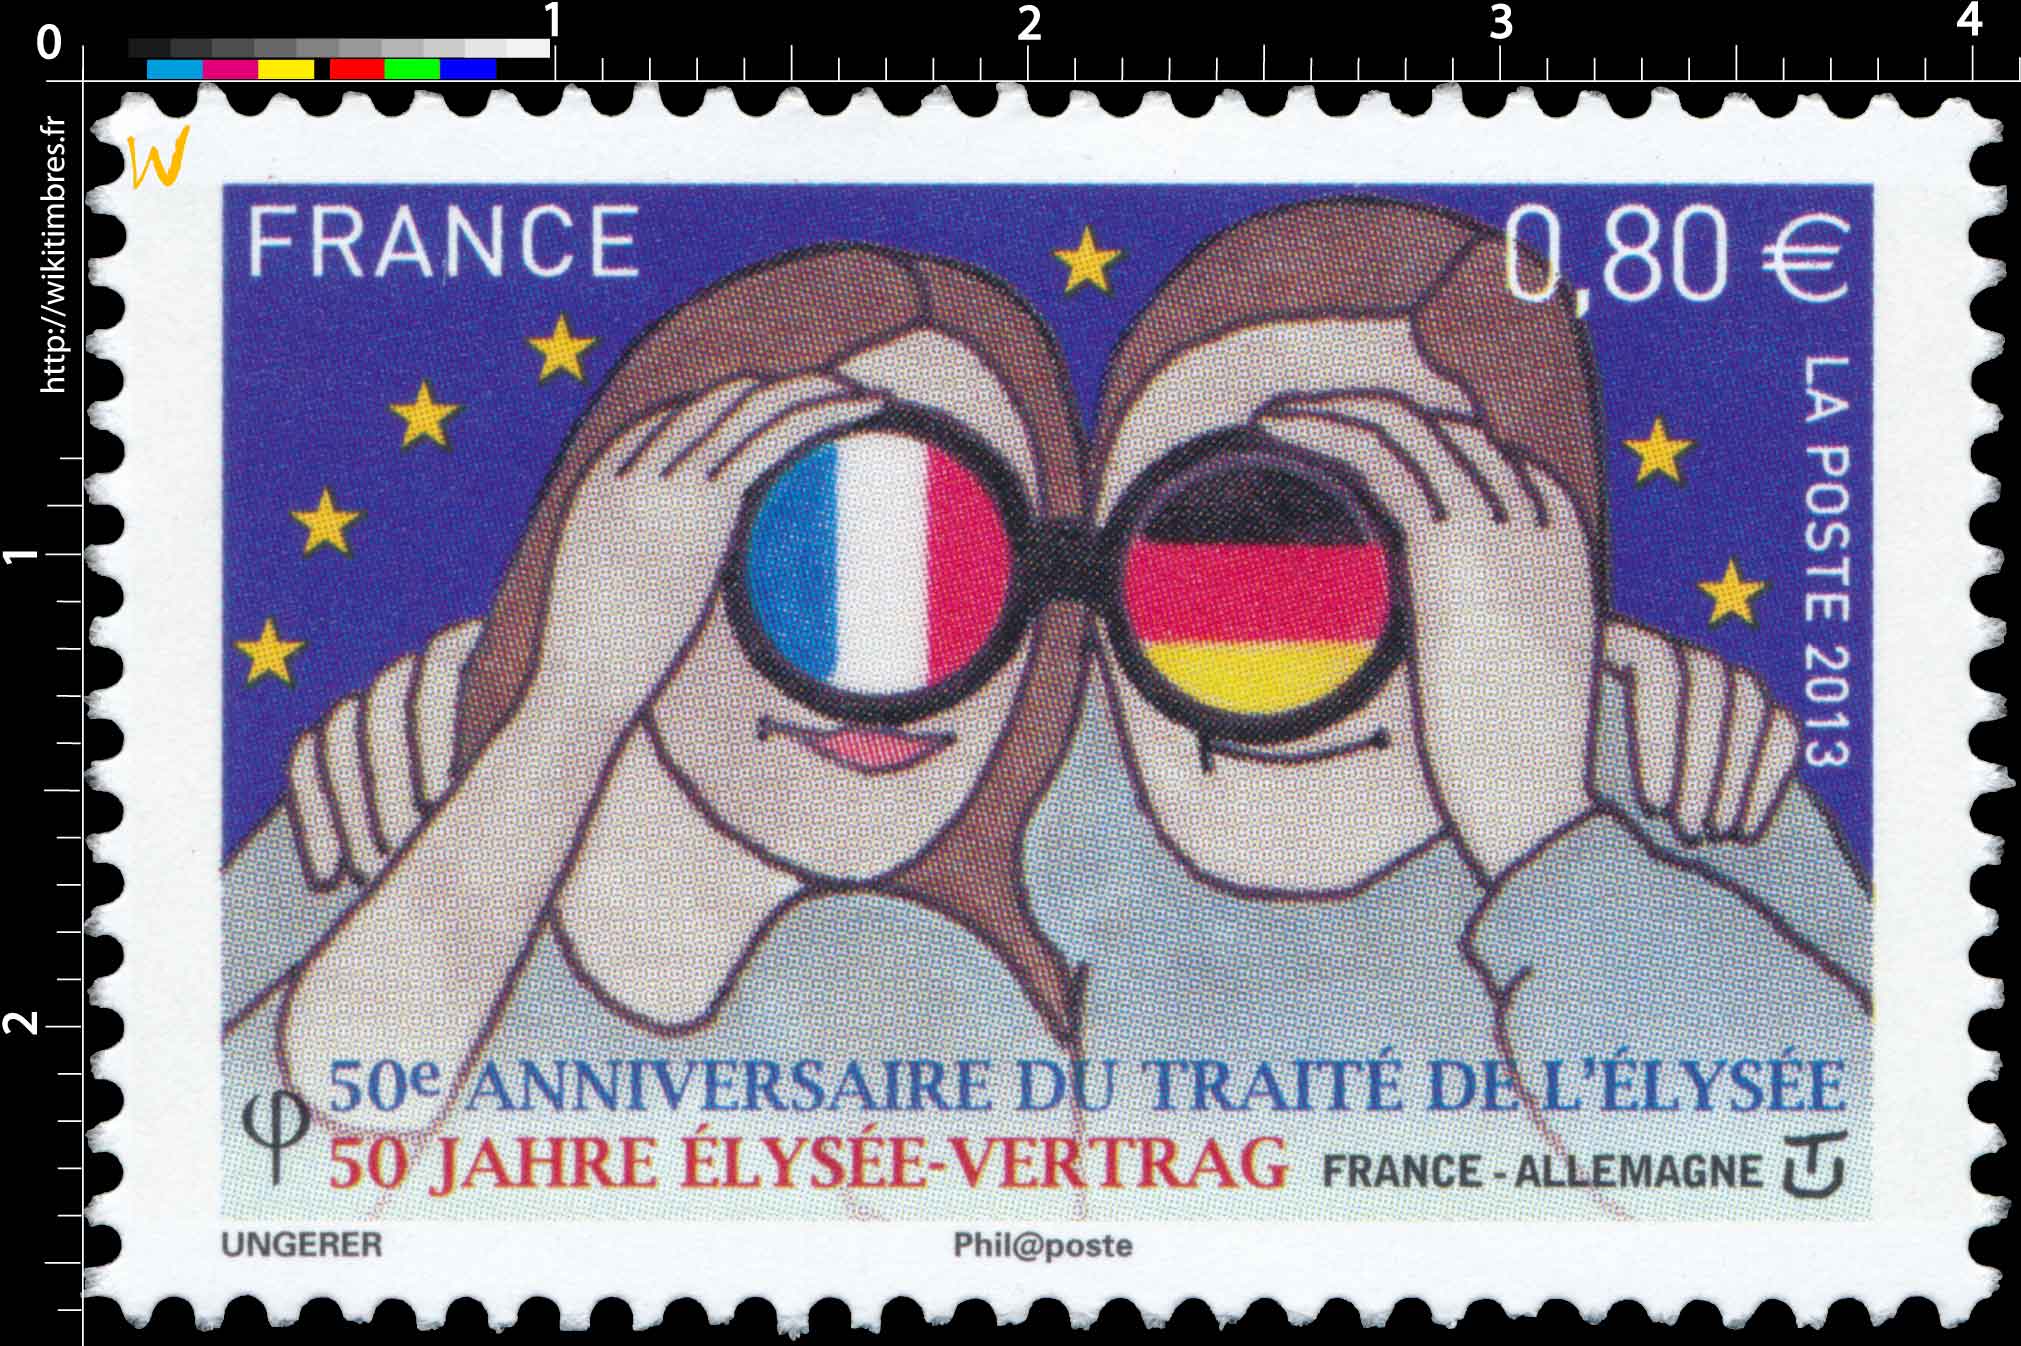 2013 50e Anniversaire du traité de l’Élysée 50 Jahre Elysée-vertrag